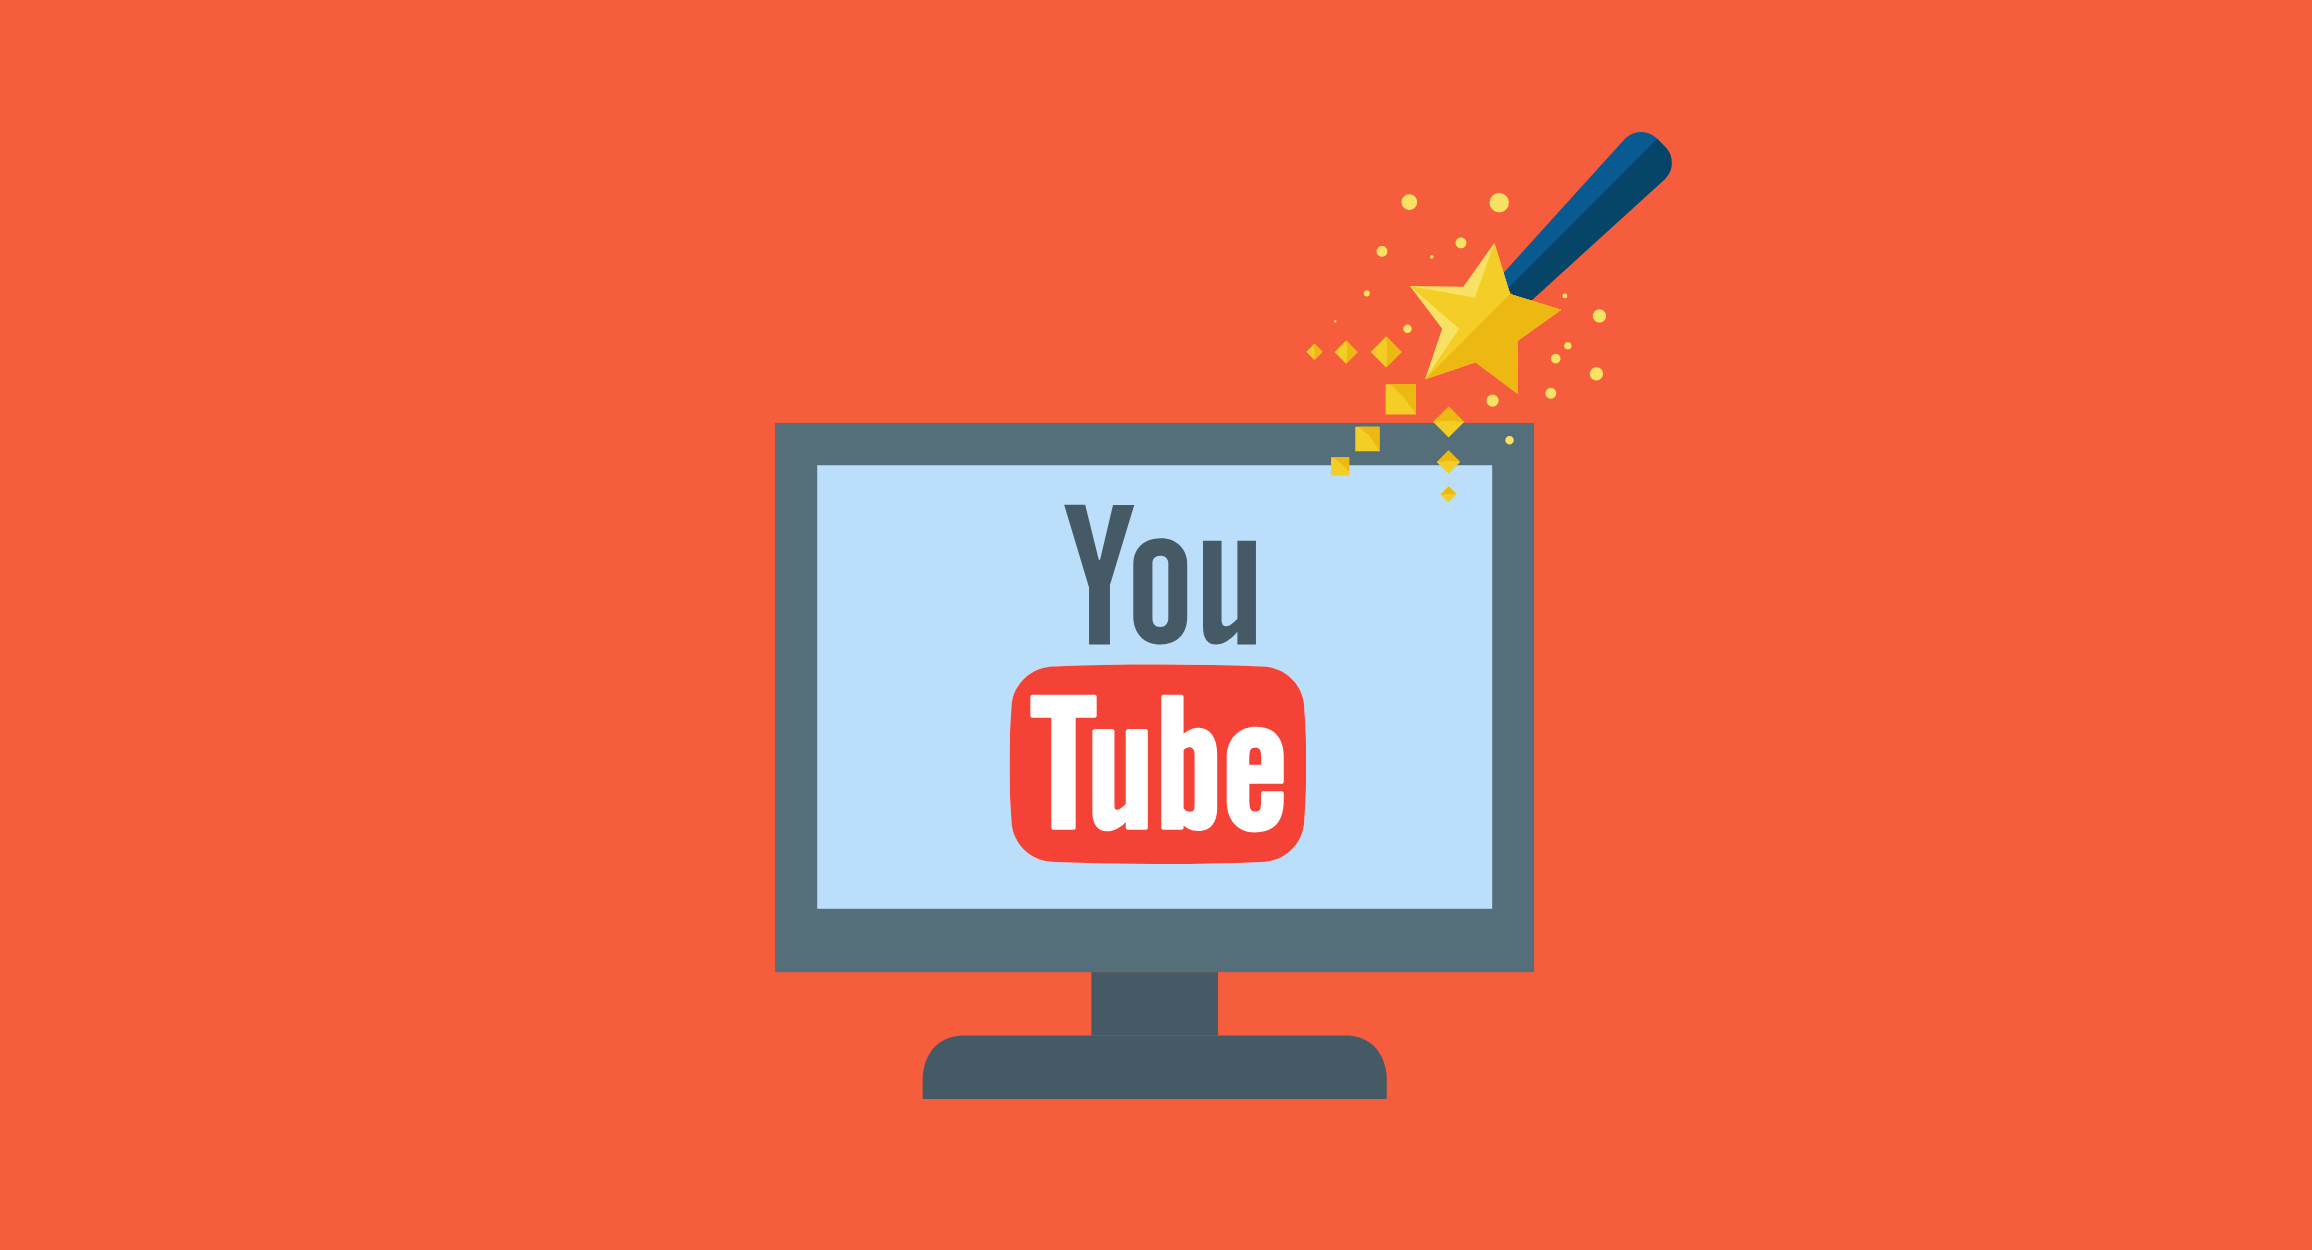 YouTube Banner & YouTube Branding Tips